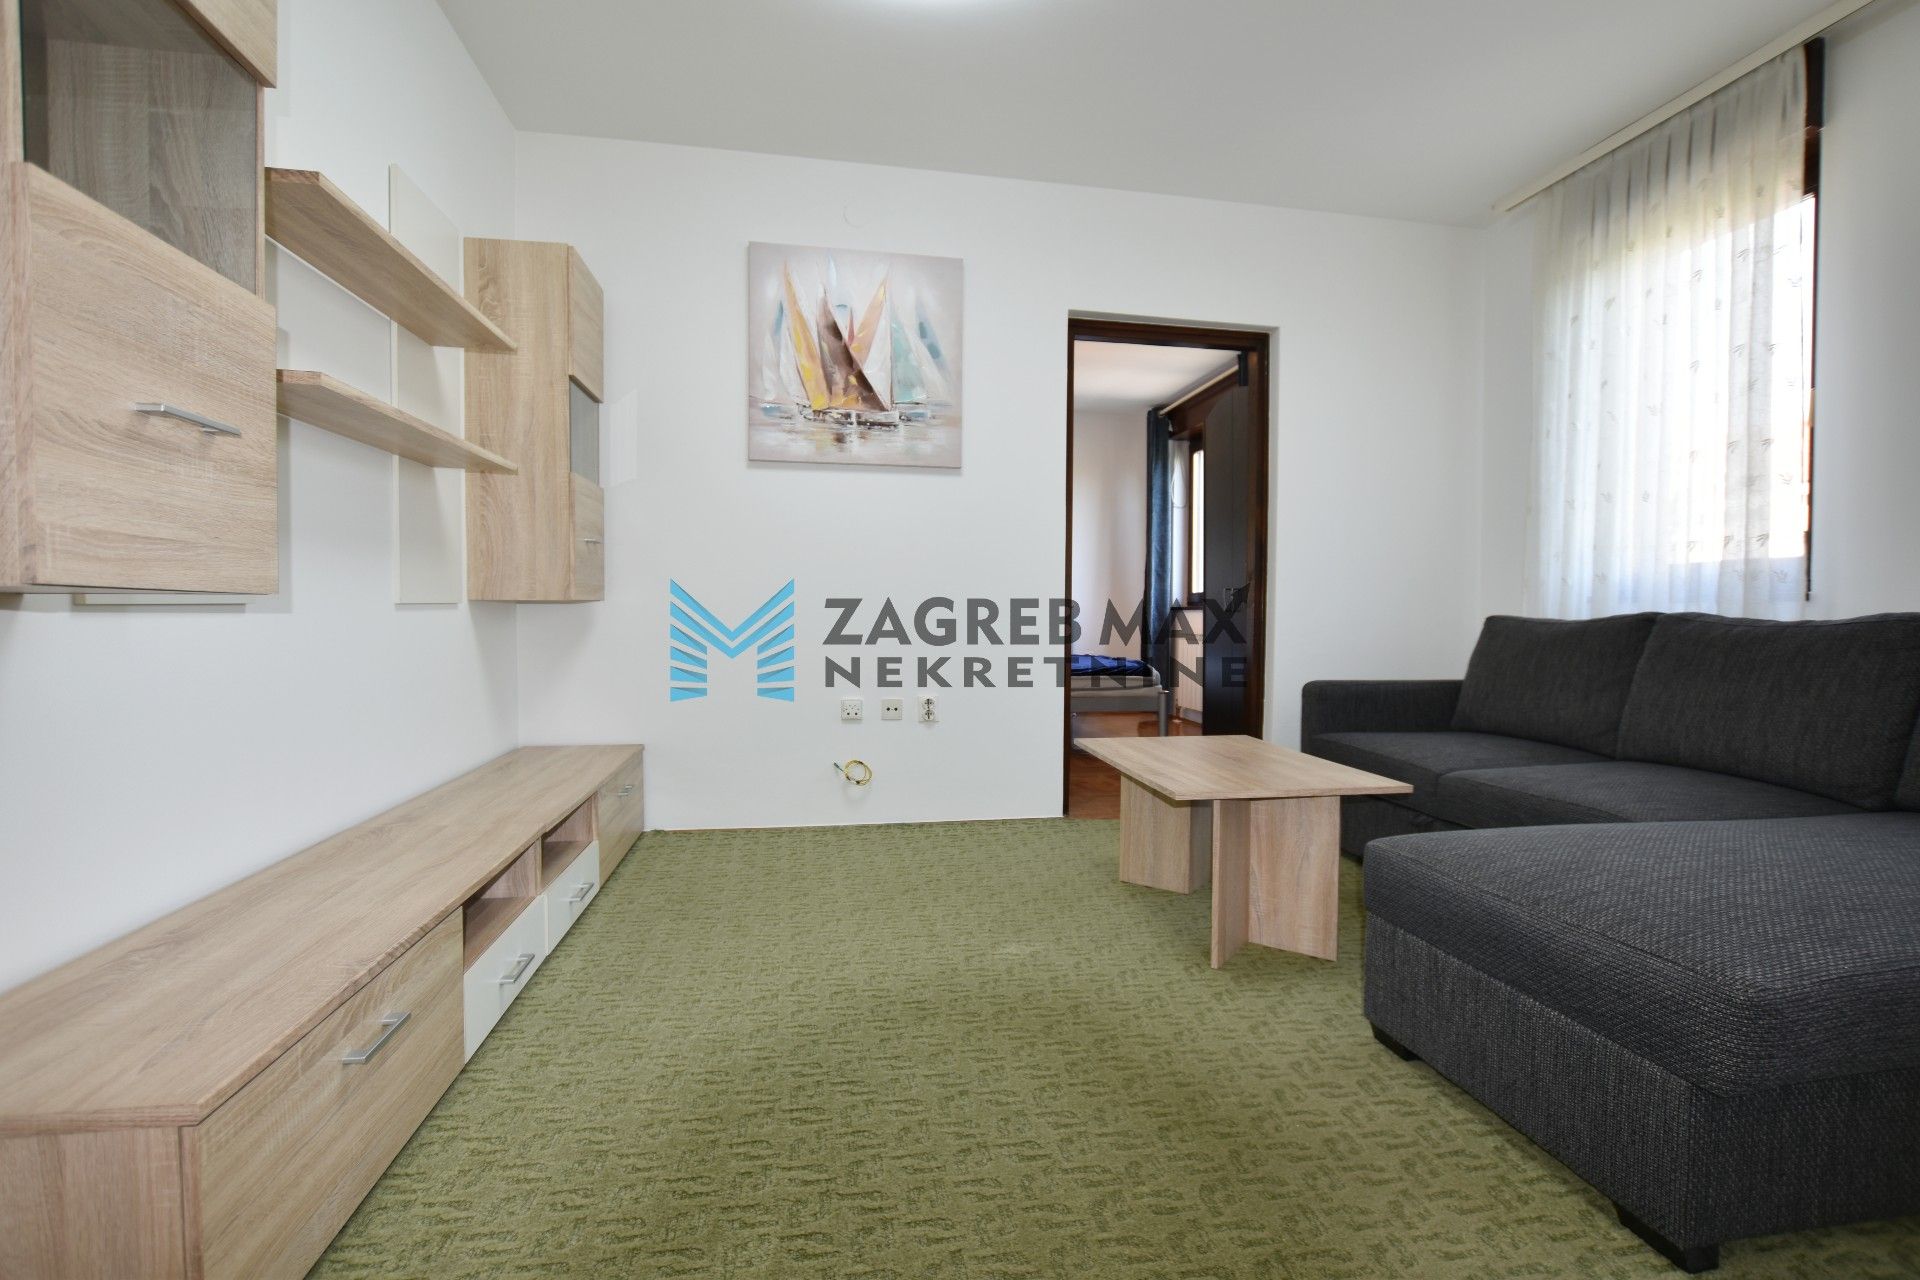 Zagreb - NAJAM - ŠPANSKO Moderan 2soban stan 50 m2, 1. kat, mirno okruženje, loggia, BEZ PROVIZIJE